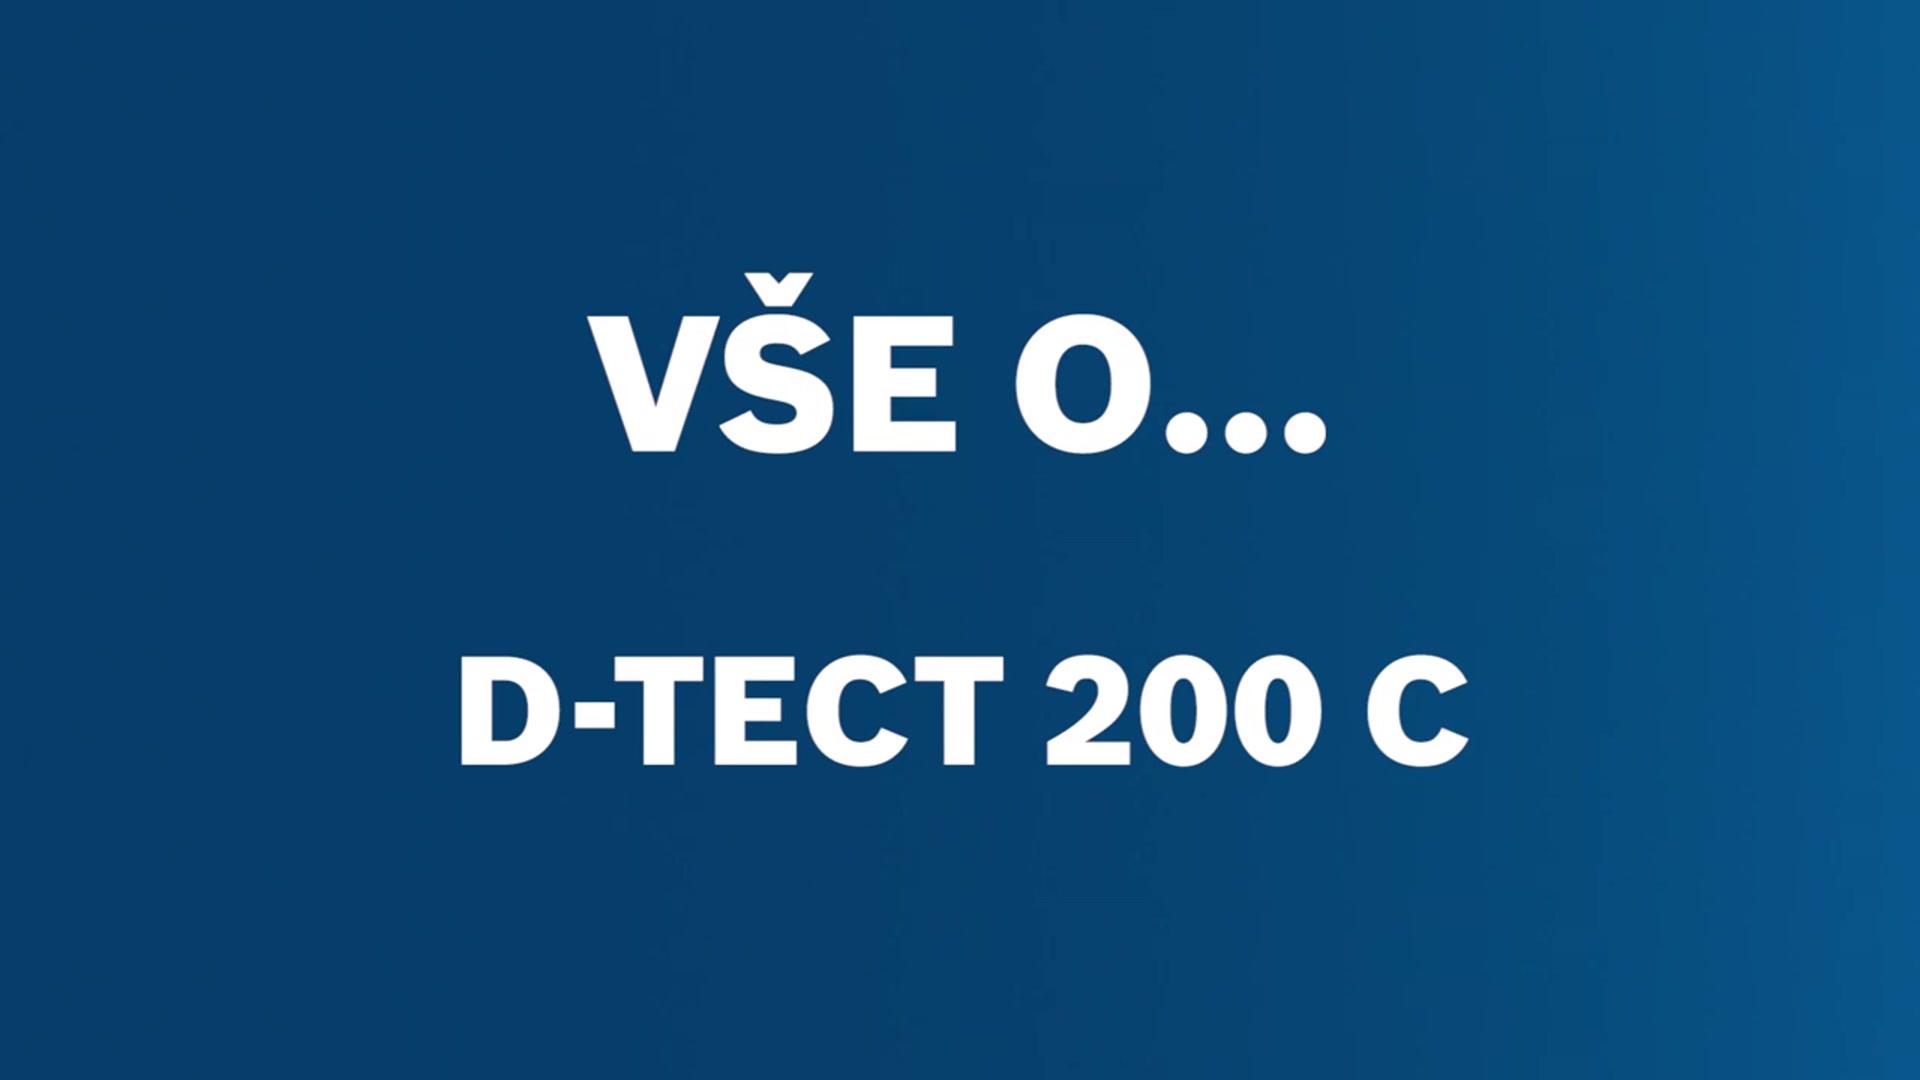 Detektor D-tect 200 C